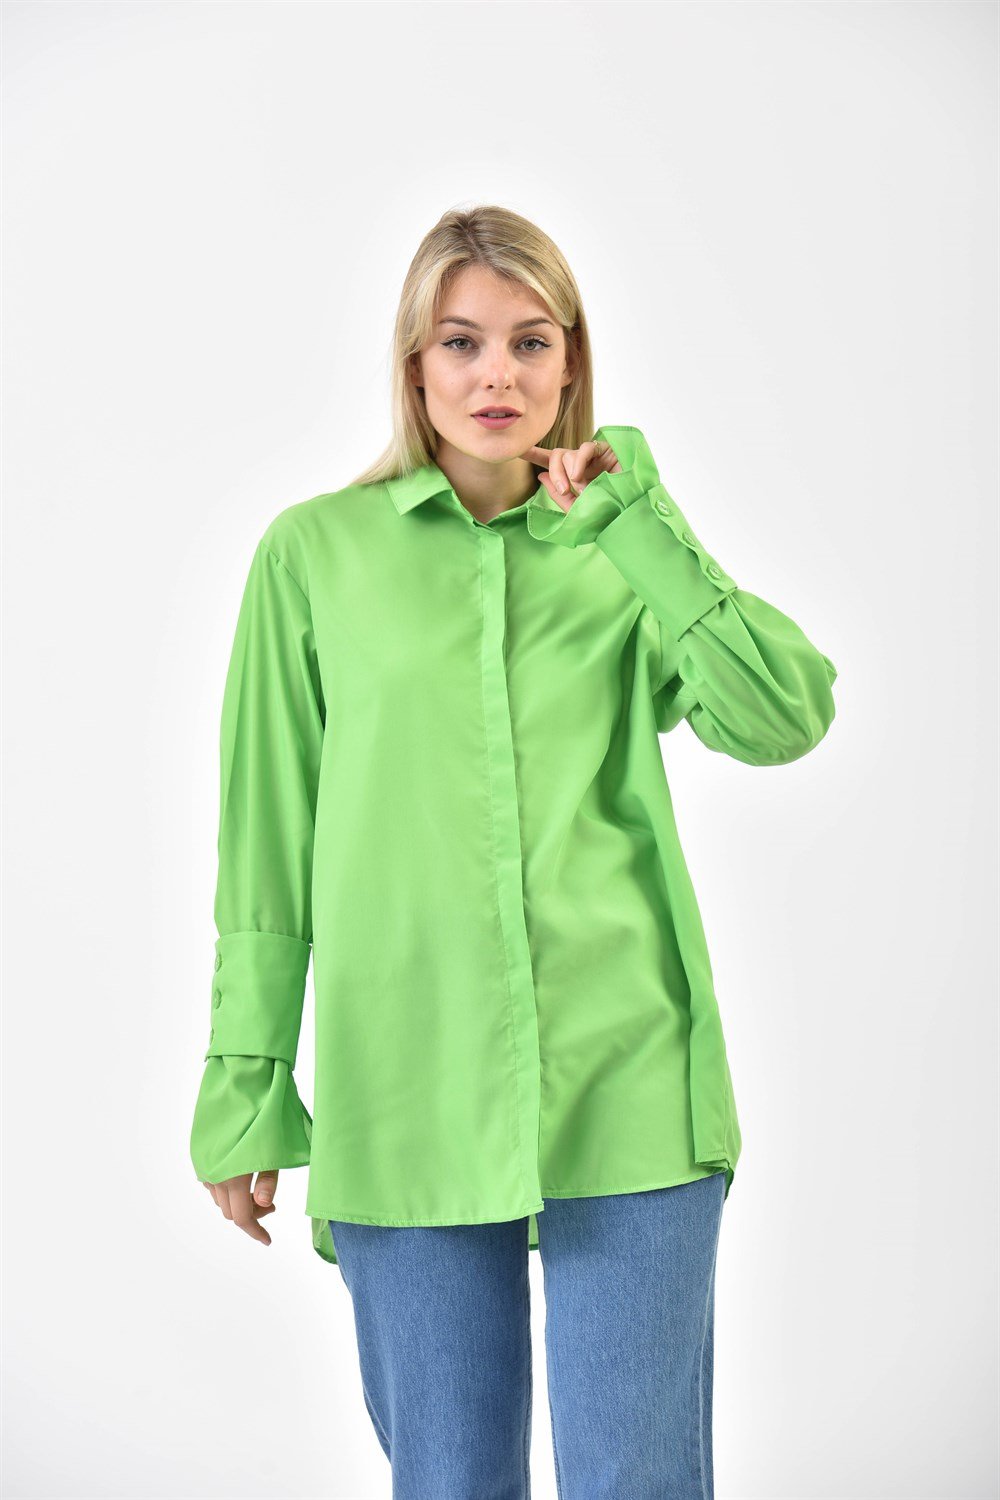 Ftz Women Kadın Koton Gömlek Yeşil 30079